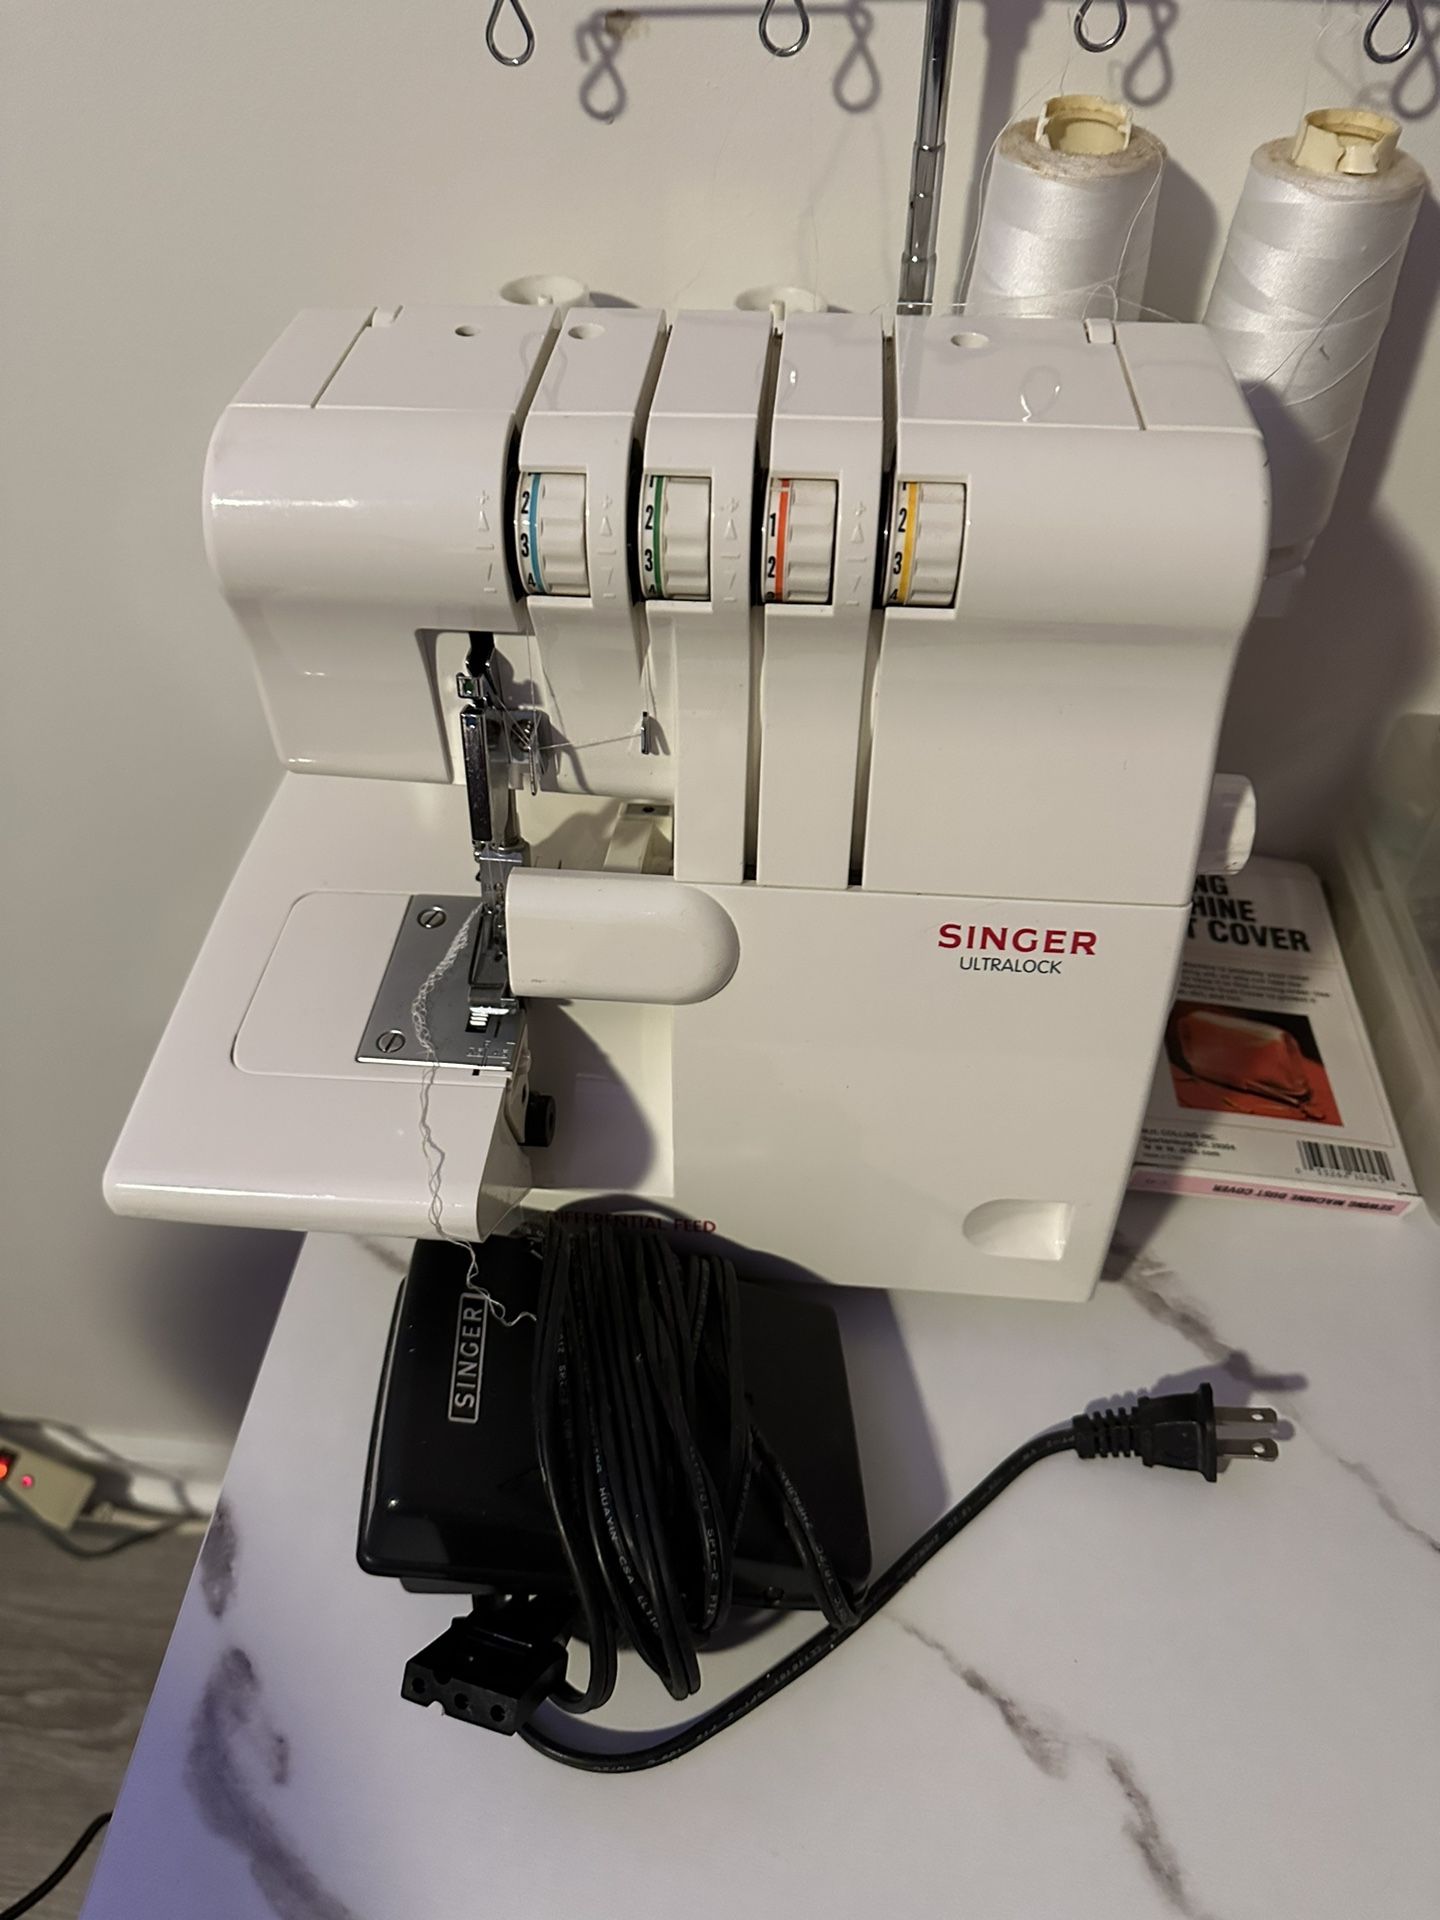 Singer Ultra lock Sewing Machine 